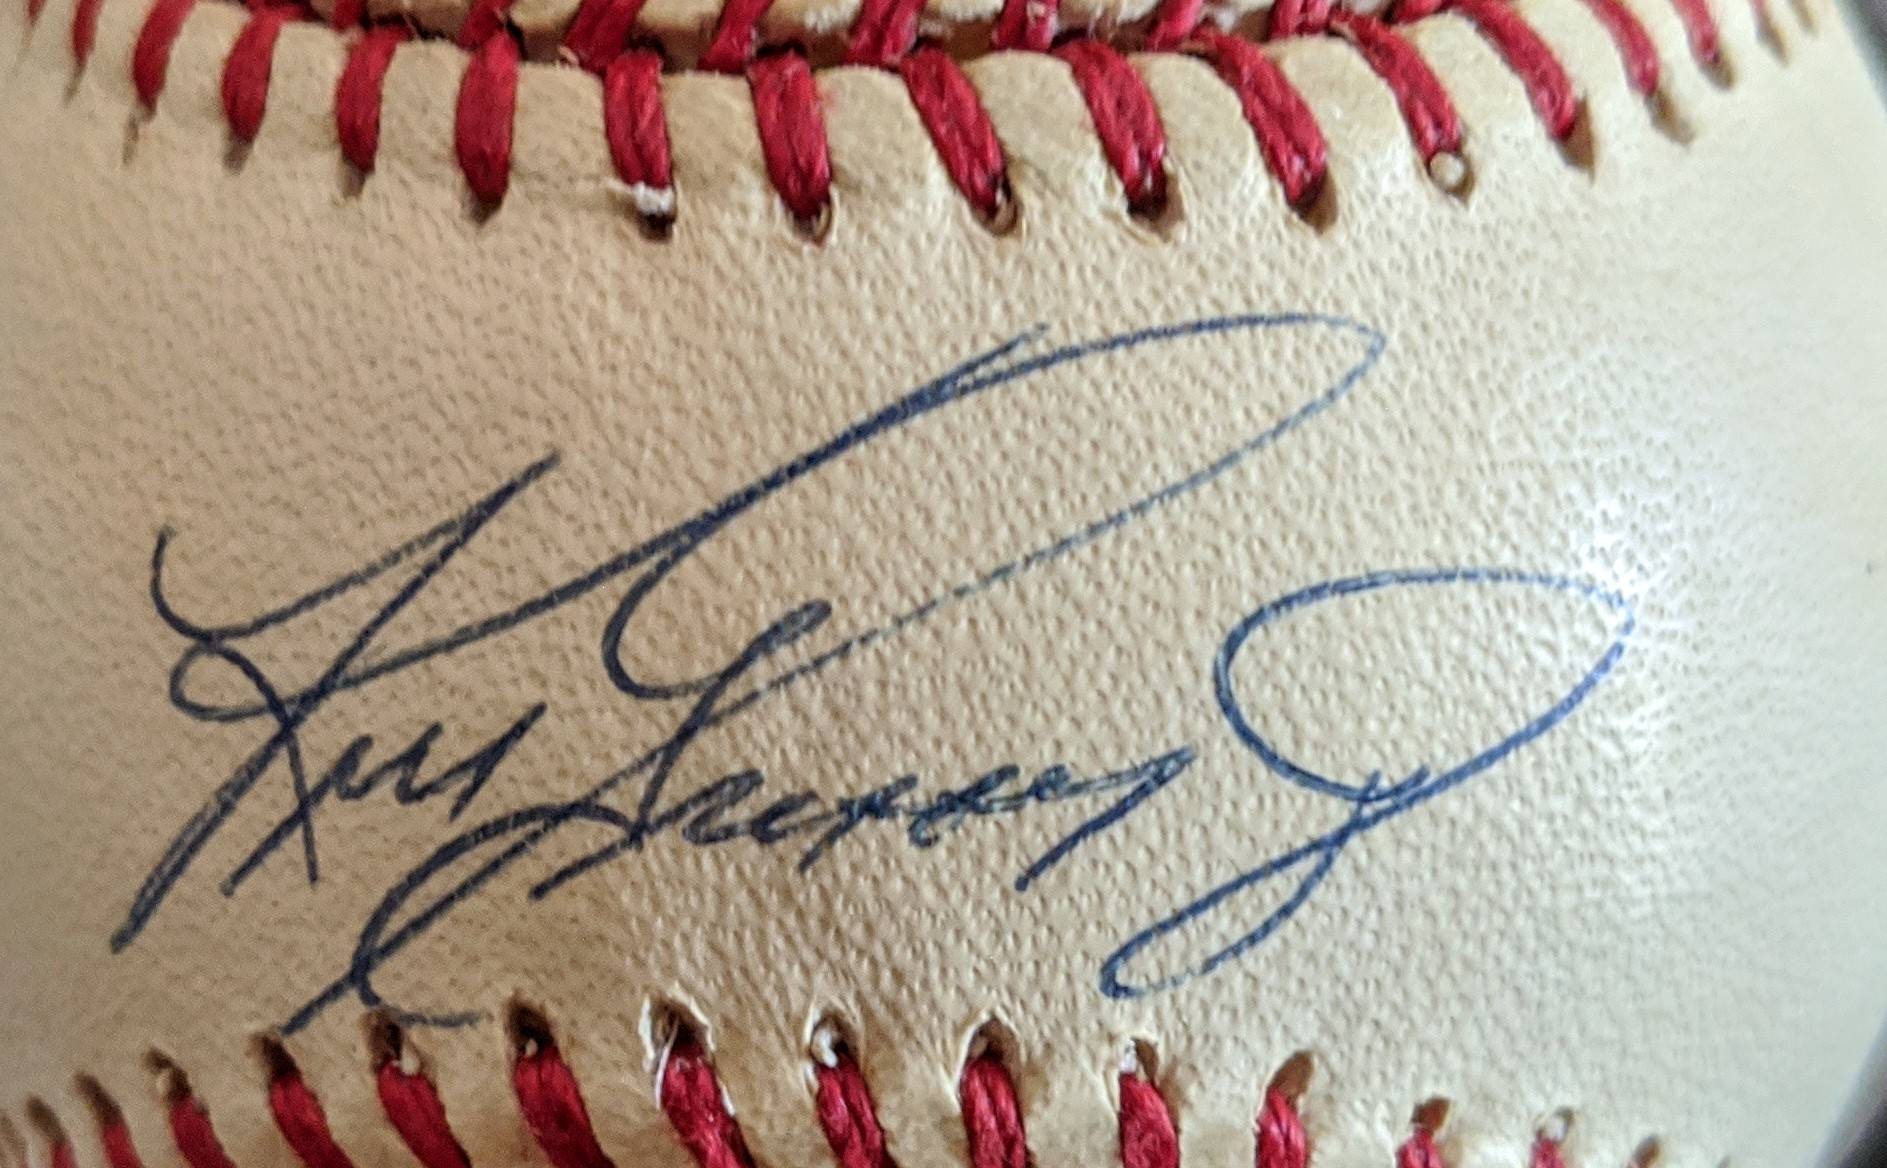 Ken Griffey Jr Autographed Hall of Fame HOF 16 Signed Baseball